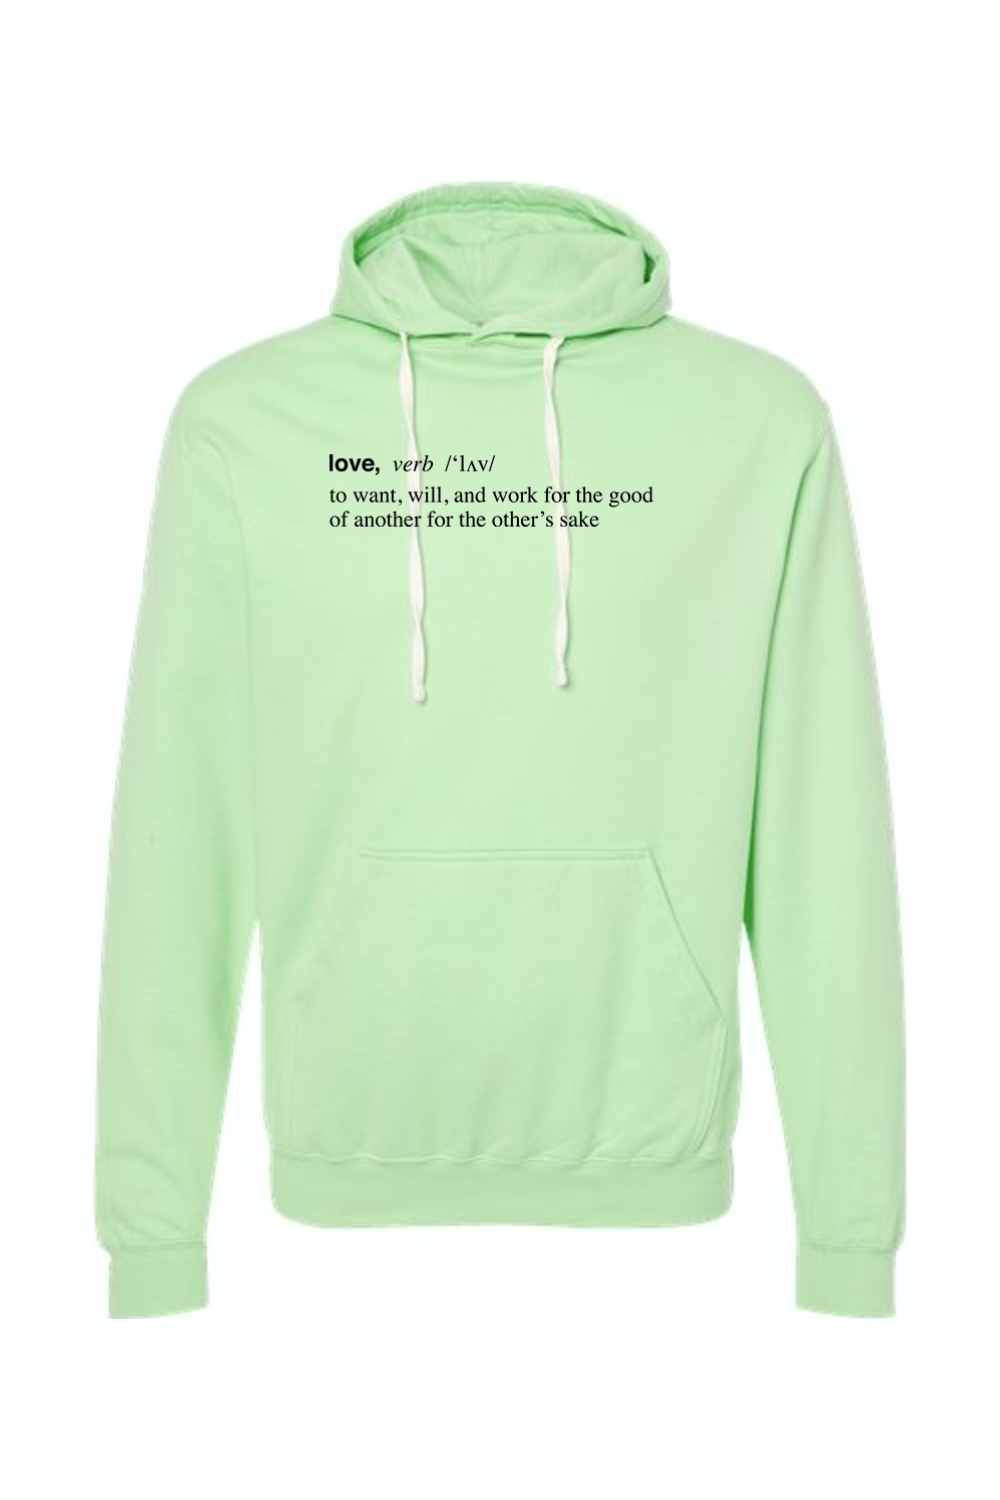 Love is a Verb - Hoodie Sweatshirt